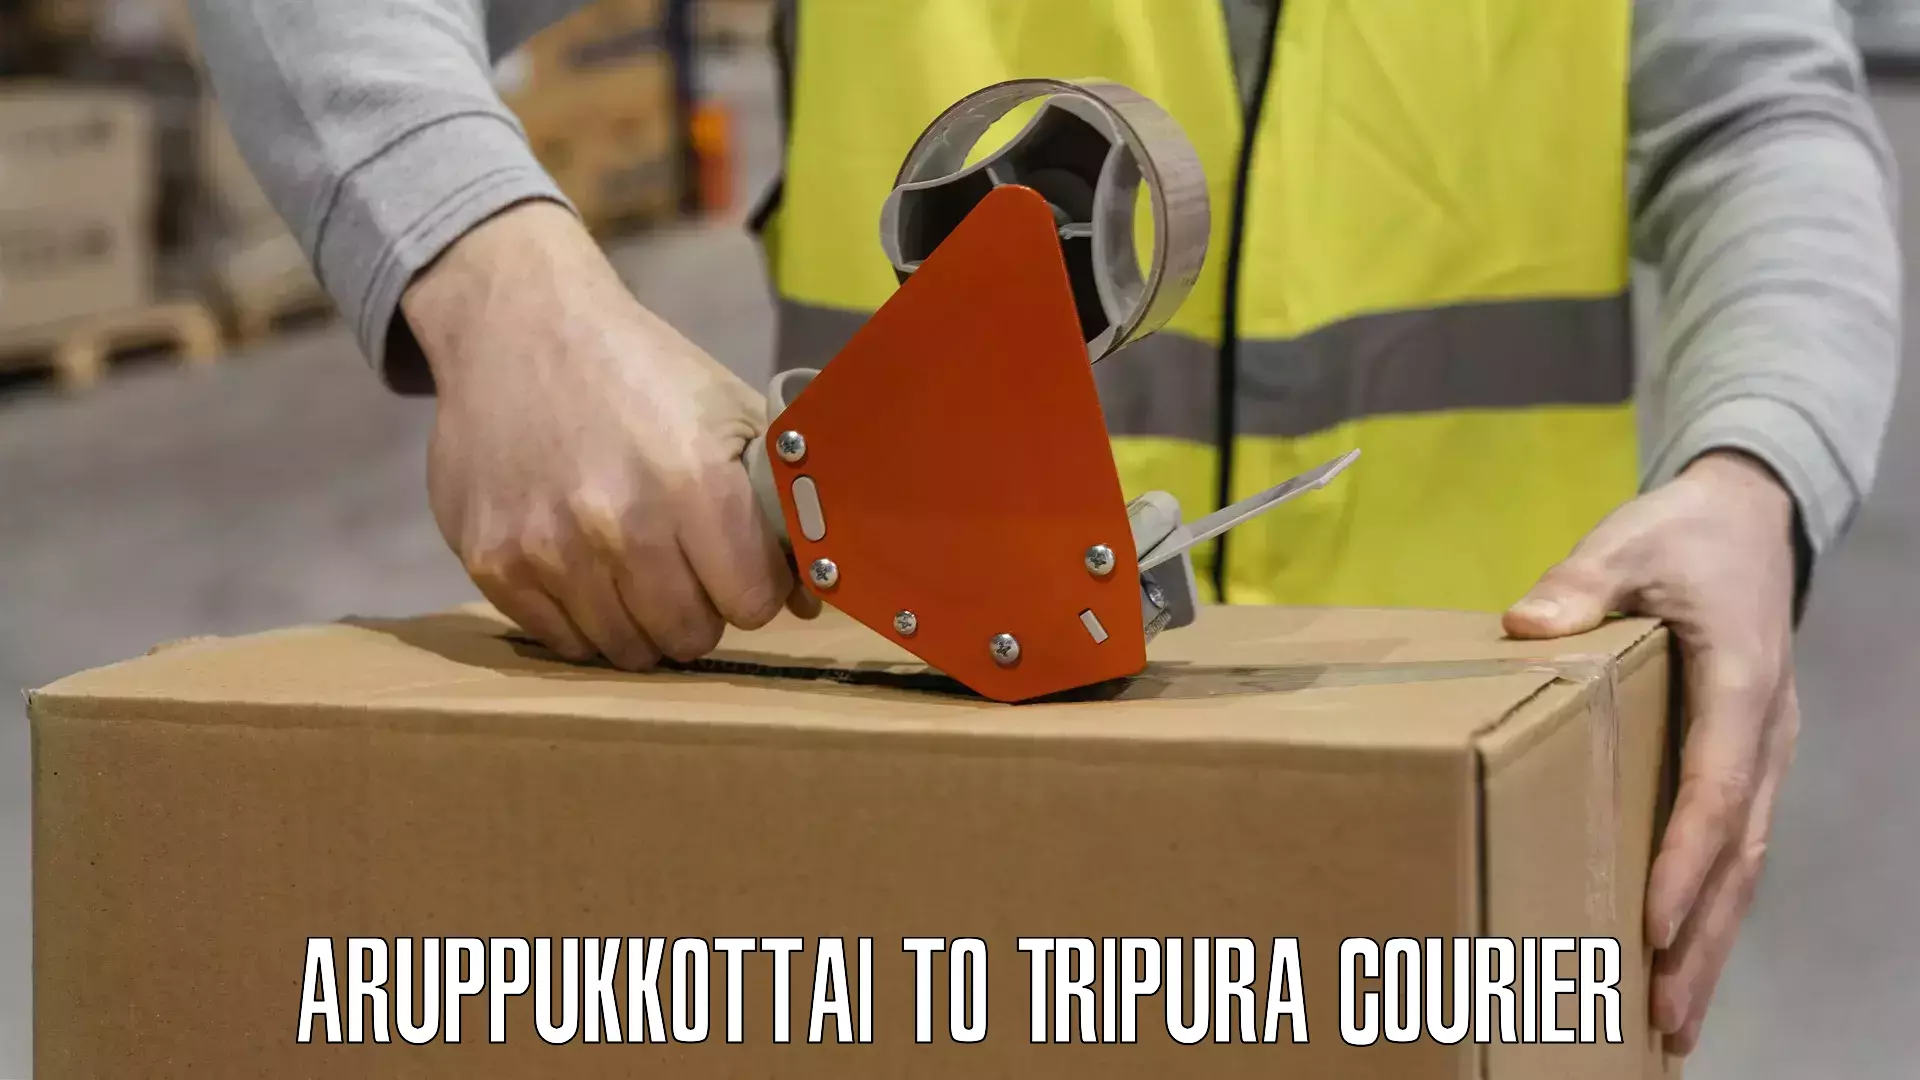 Next-generation courier services Aruppukkottai to Santirbazar